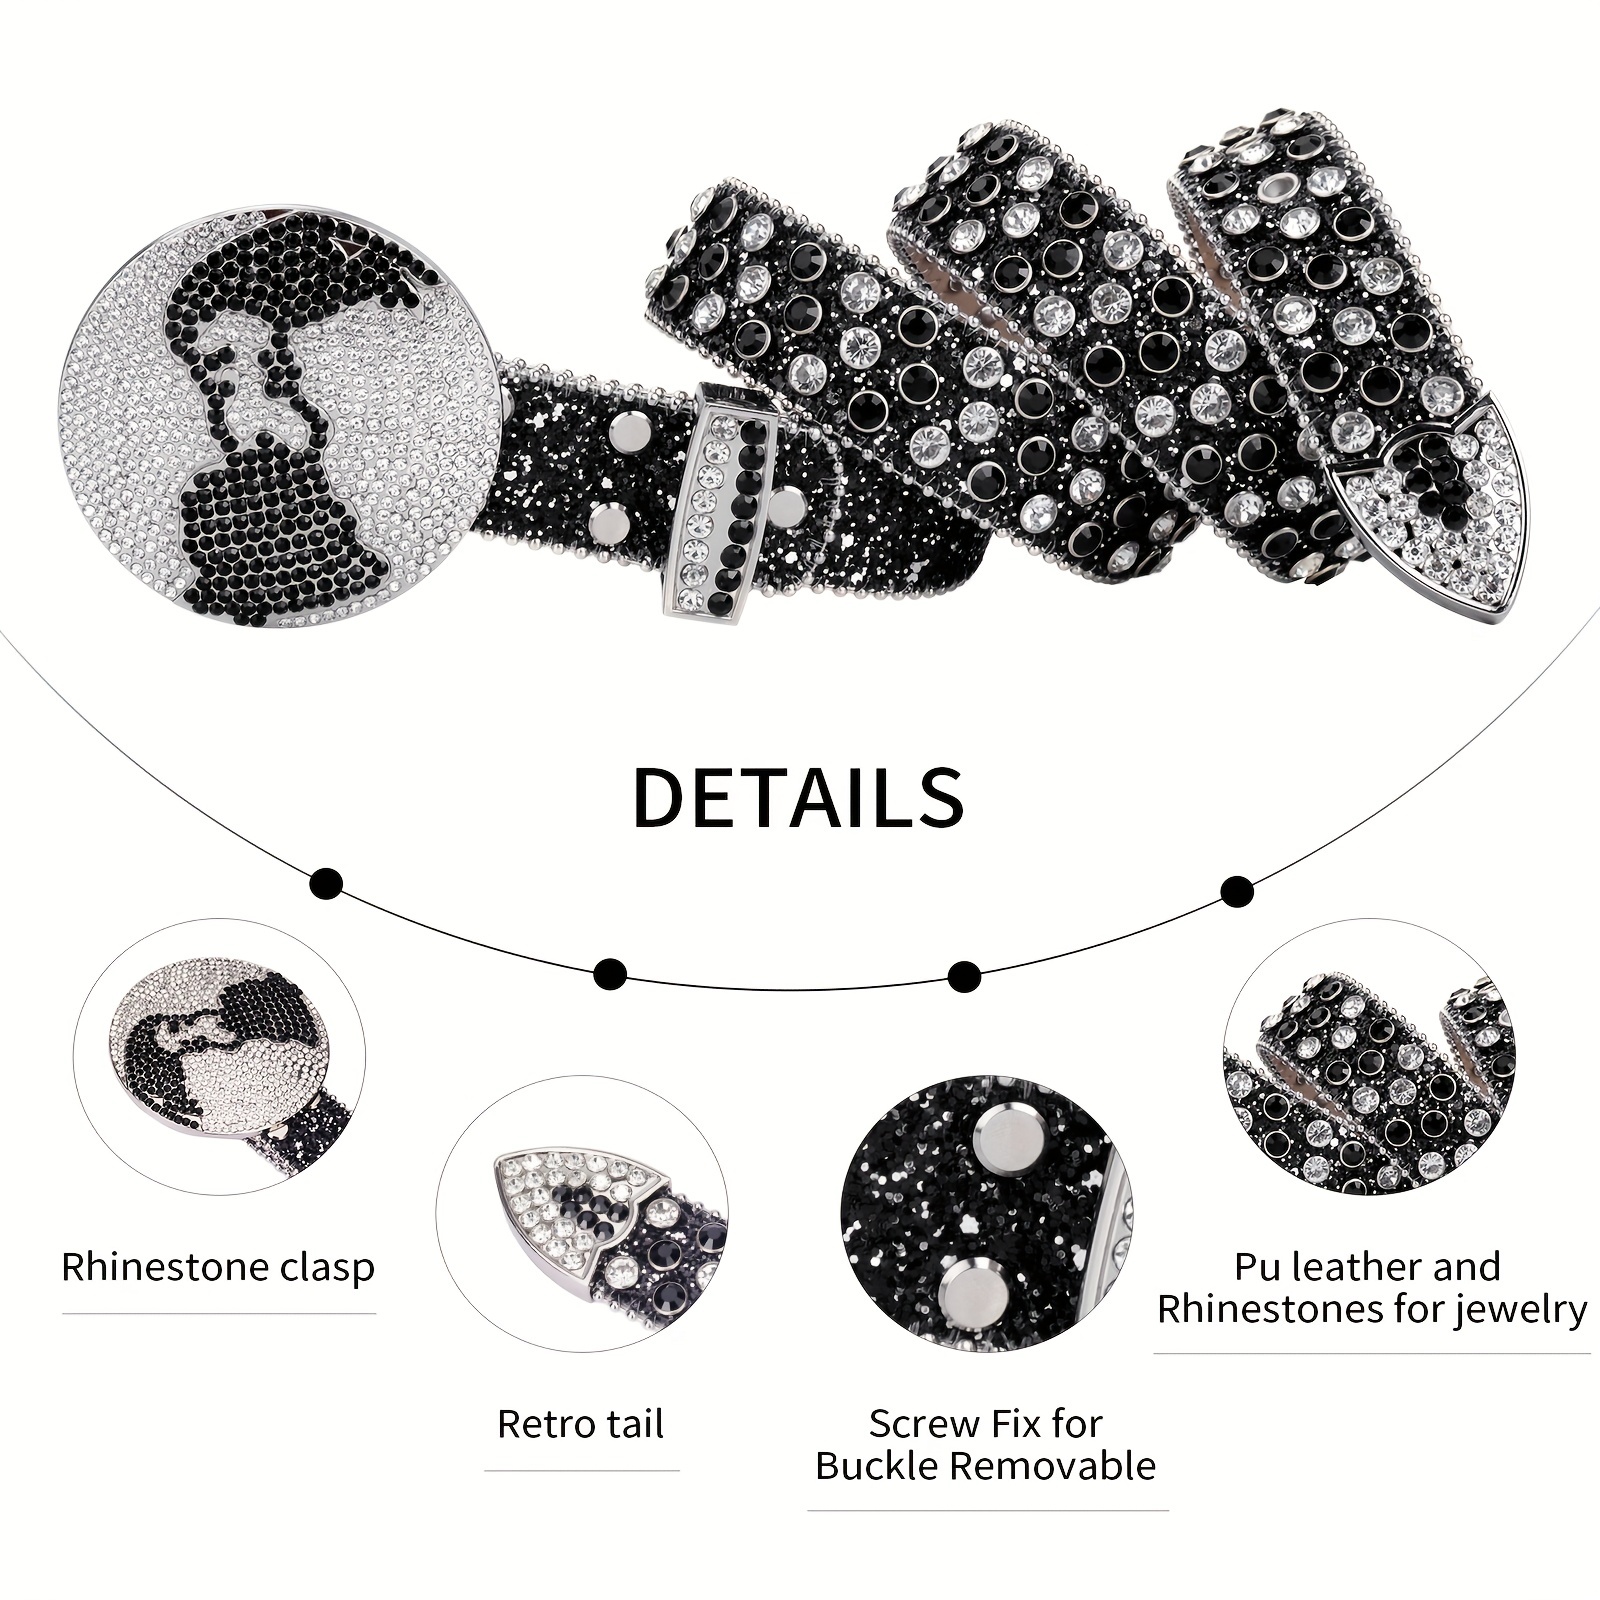 Cinturón de diamante de agua de moda para hombres y mujeres con  incrustaciones de cristal de alta calidad y ancho neutro de 3,8 cm